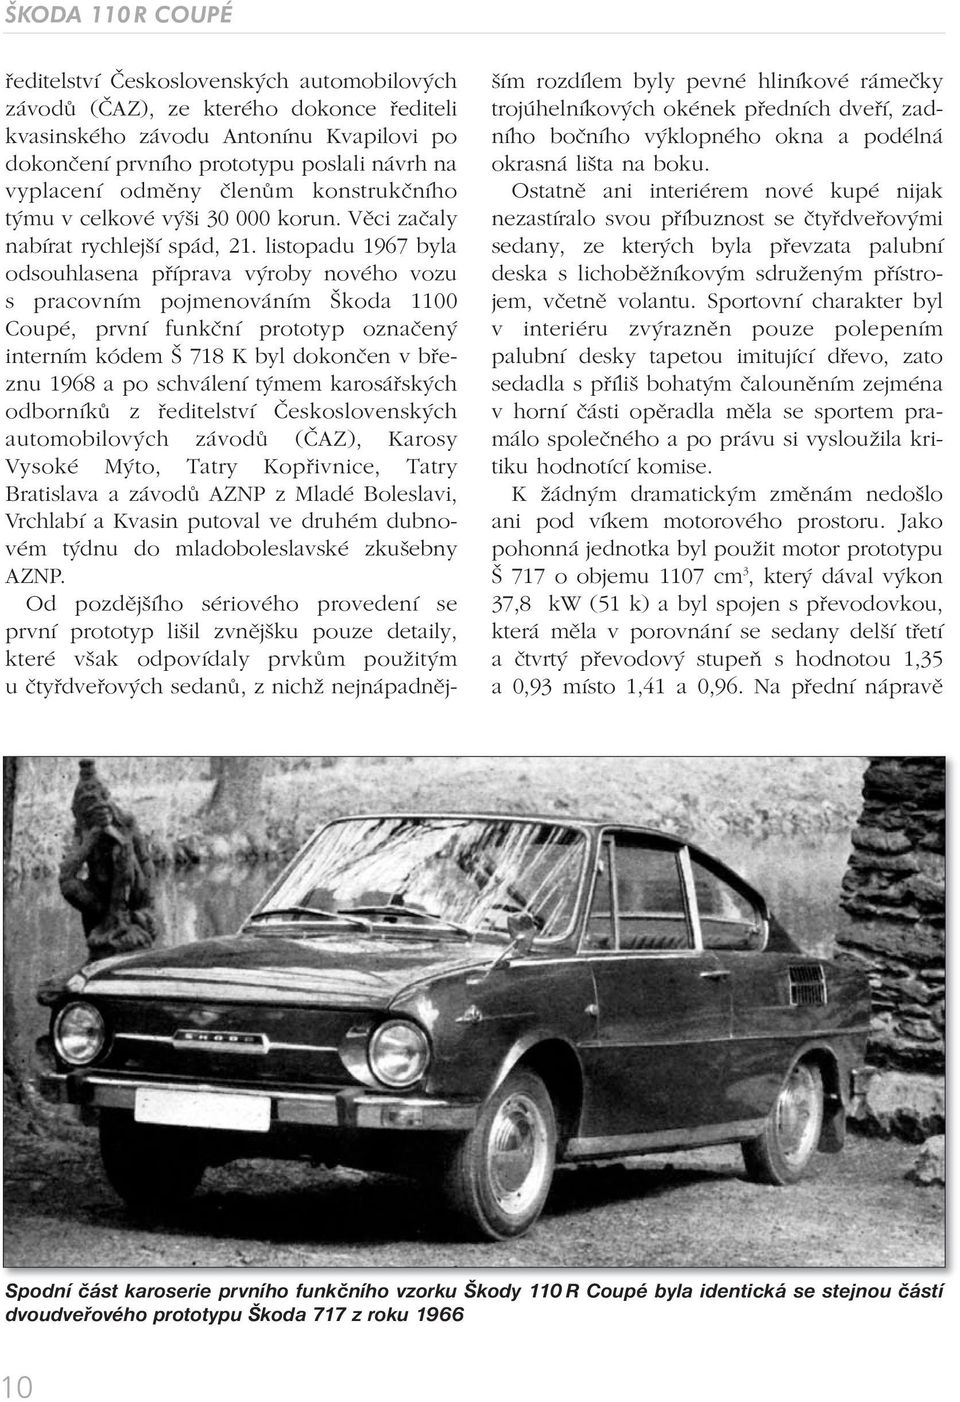 listopadu 1967 byla odsouhlasena příprava výroby nového vozu s pracovním pojmenováním Škoda 1100 Coupé, první funkční prototyp označený interním kódem Š 718 K byl dokončen v březnu 1968 a po